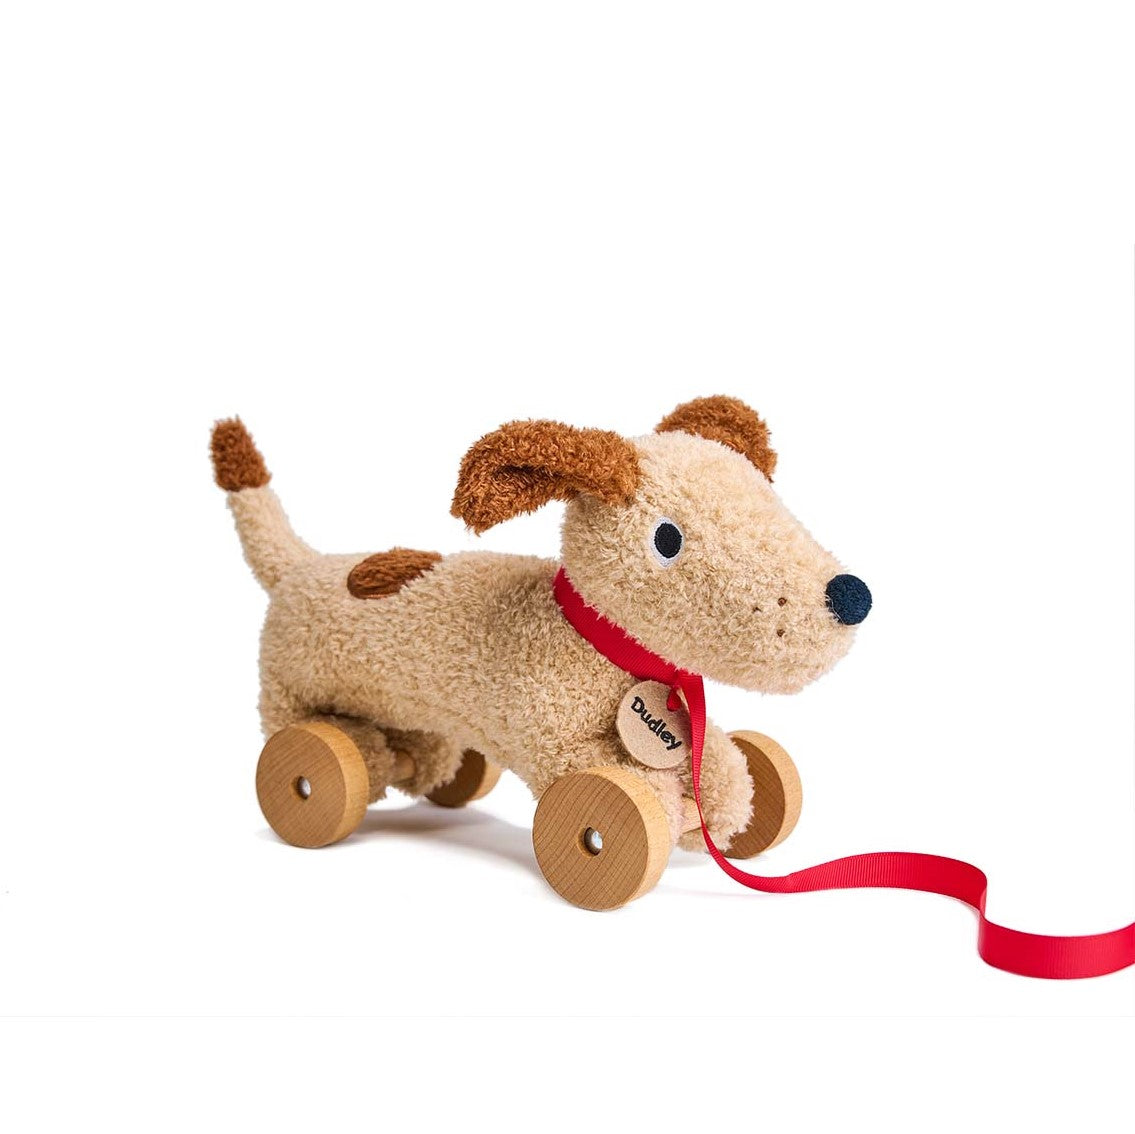  Multipet Paddington Bear Plush Dog Toy, 10 : Pet